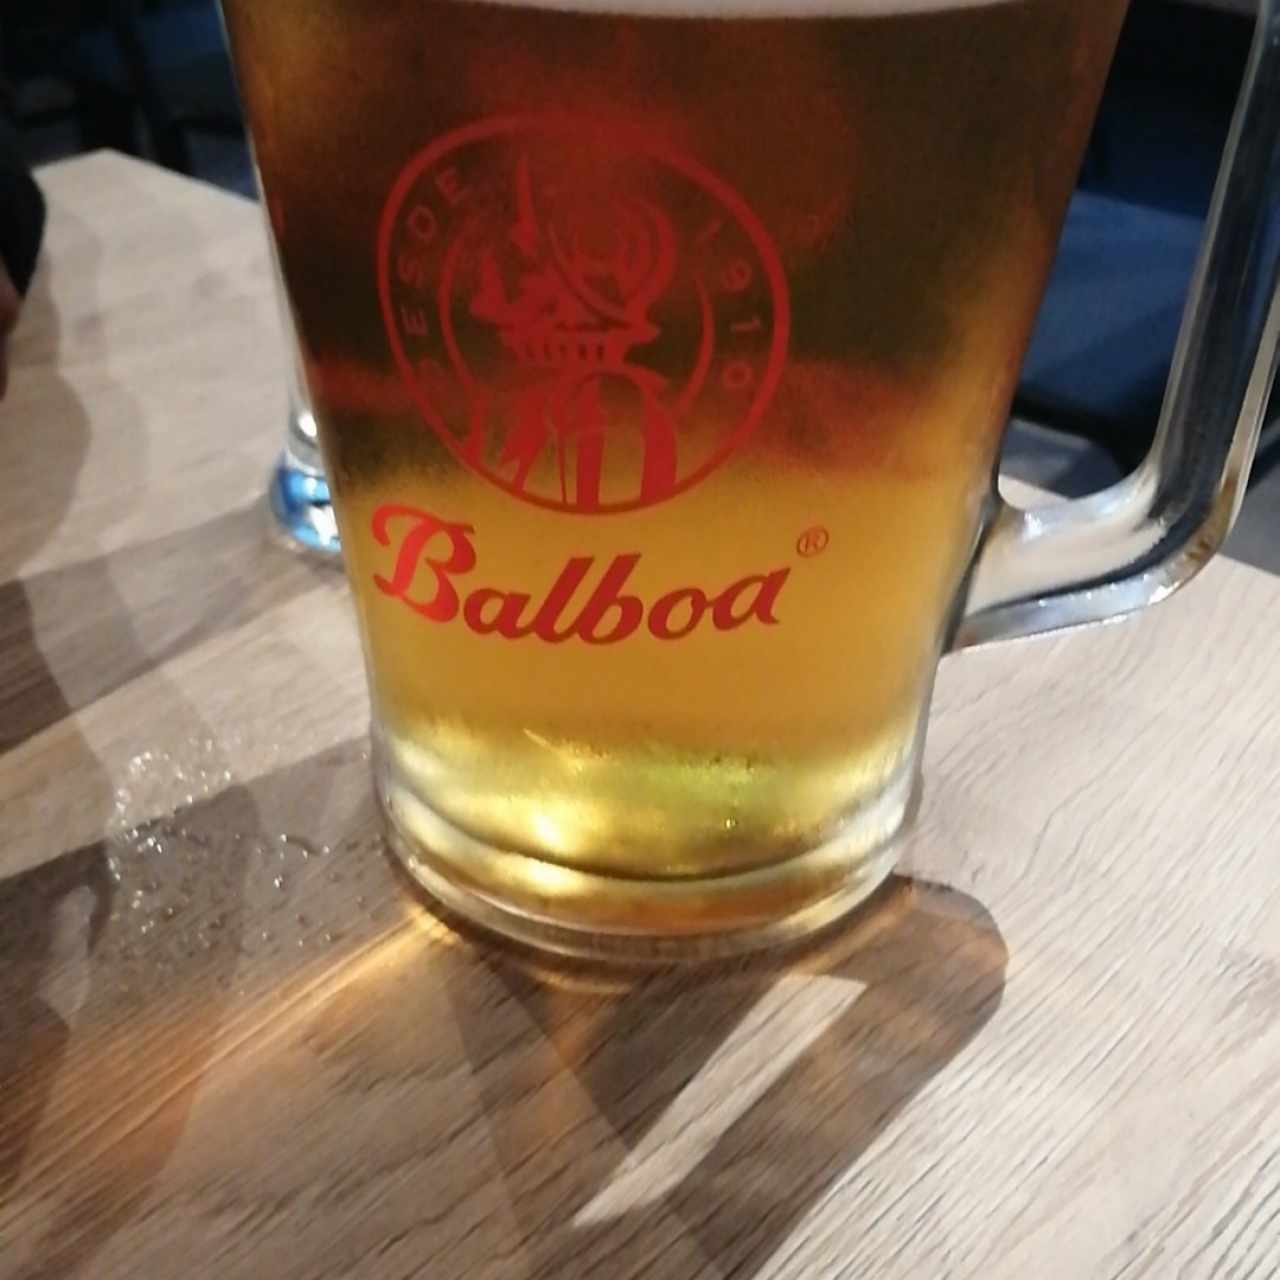 Jarra de cerveza Balboa bien fria